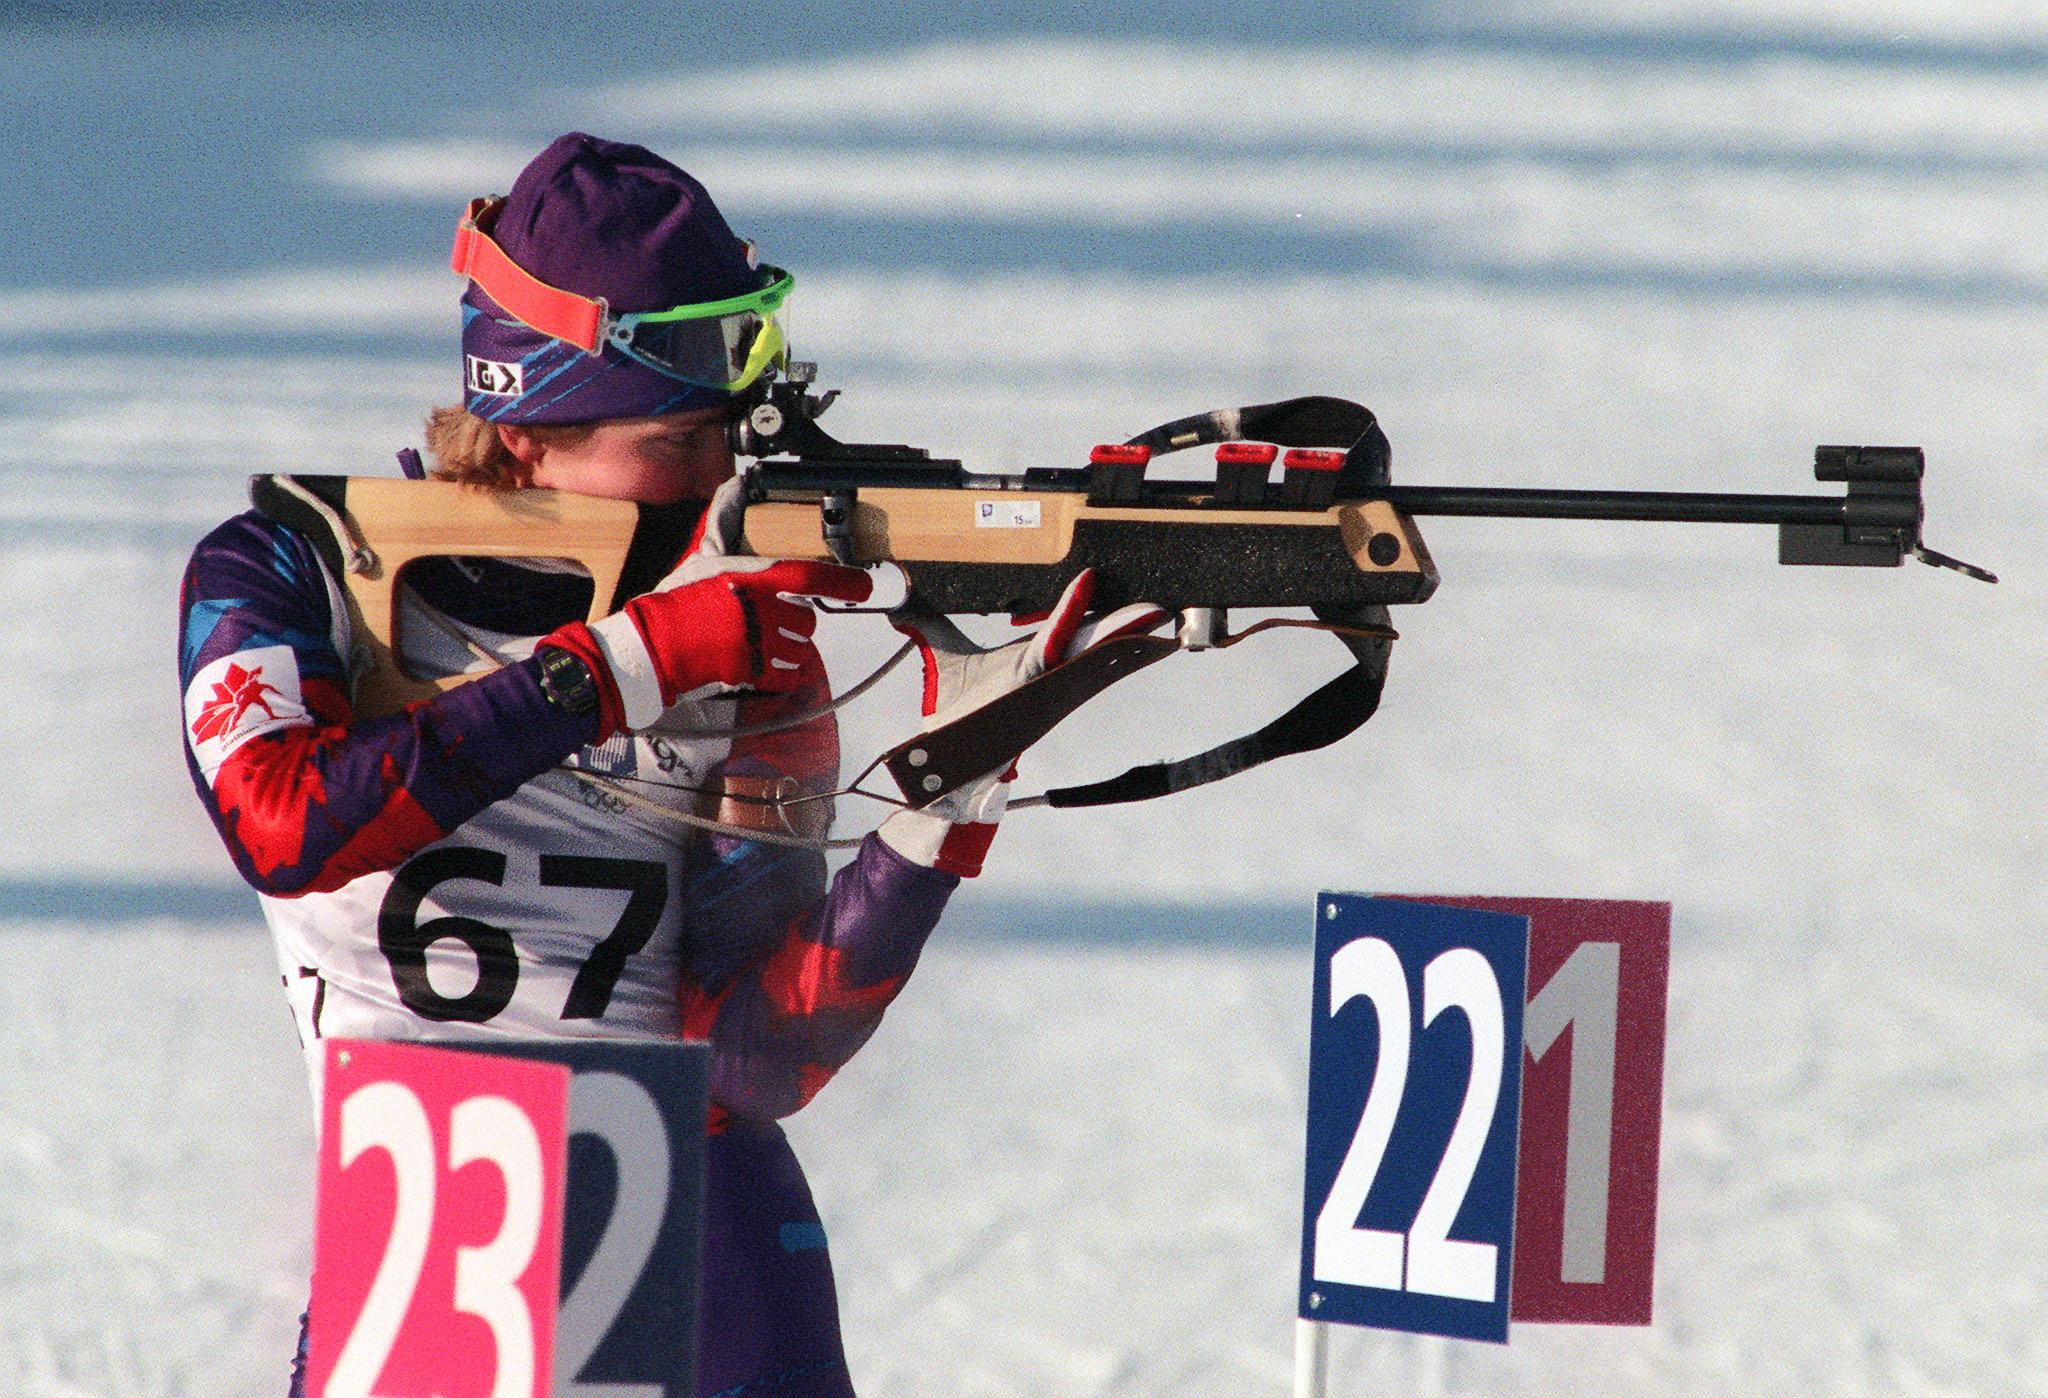 Myriam Bédard won three Olympic biathlon medals for Canada ©Getty Images